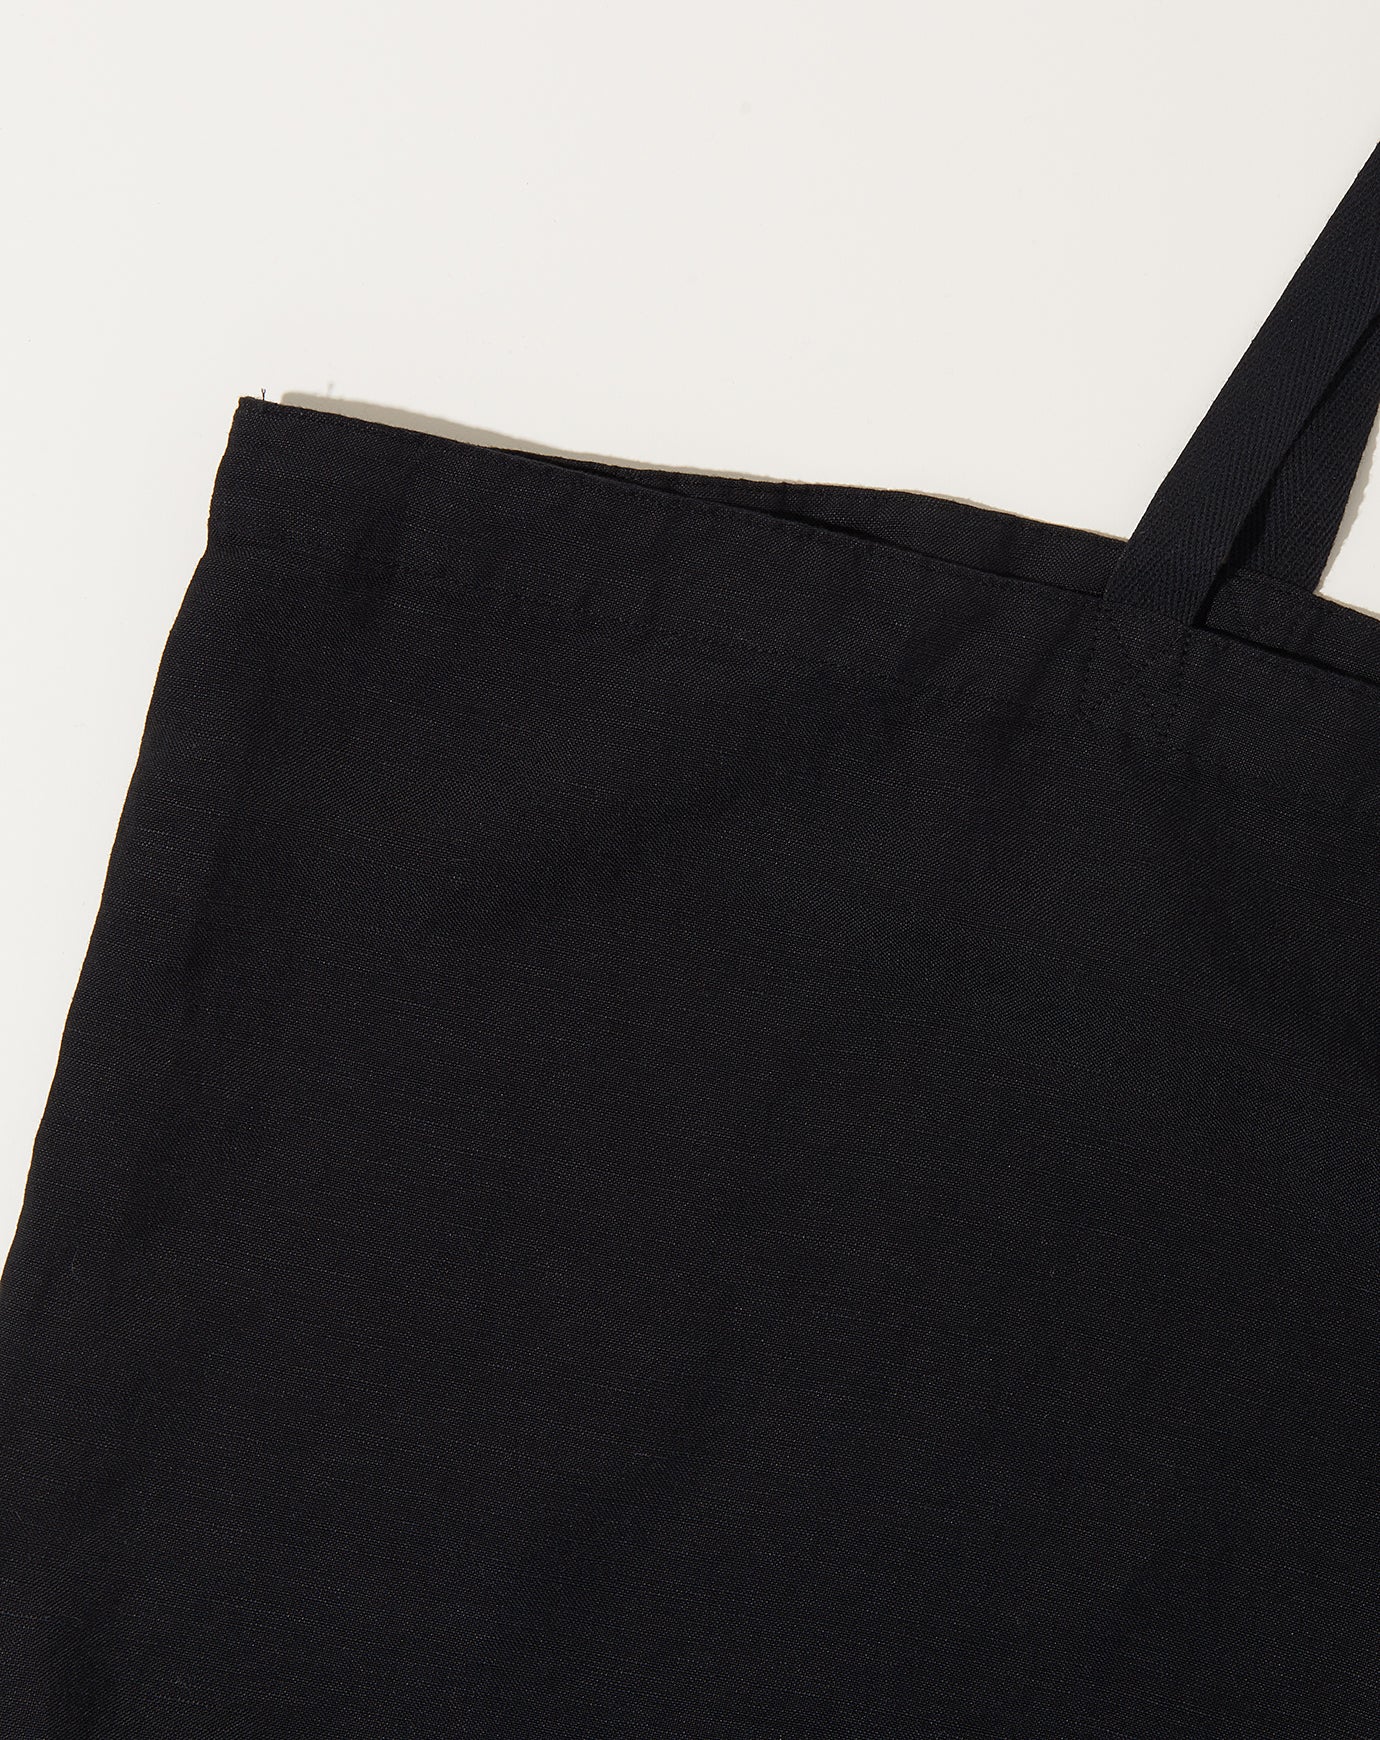 Loiter Tote Bag in Black